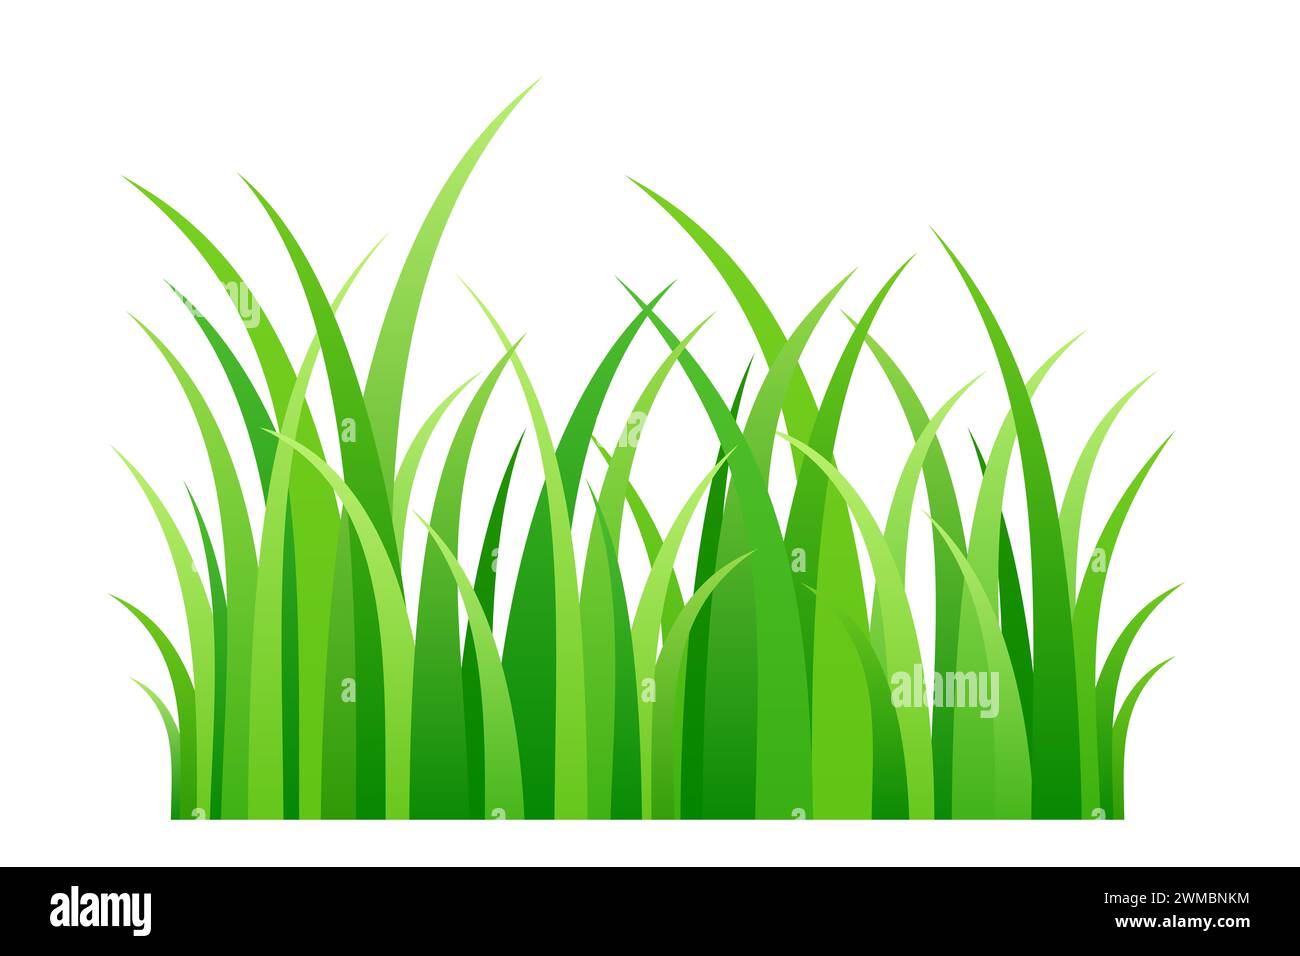 Herbe verte, illustration d'une courte bande de lames d'herbe de printemps fraîche. Vue de face des tiges vertes de chlorophylle dans une rangée, et un morceau de pelouse. Banque D'Images